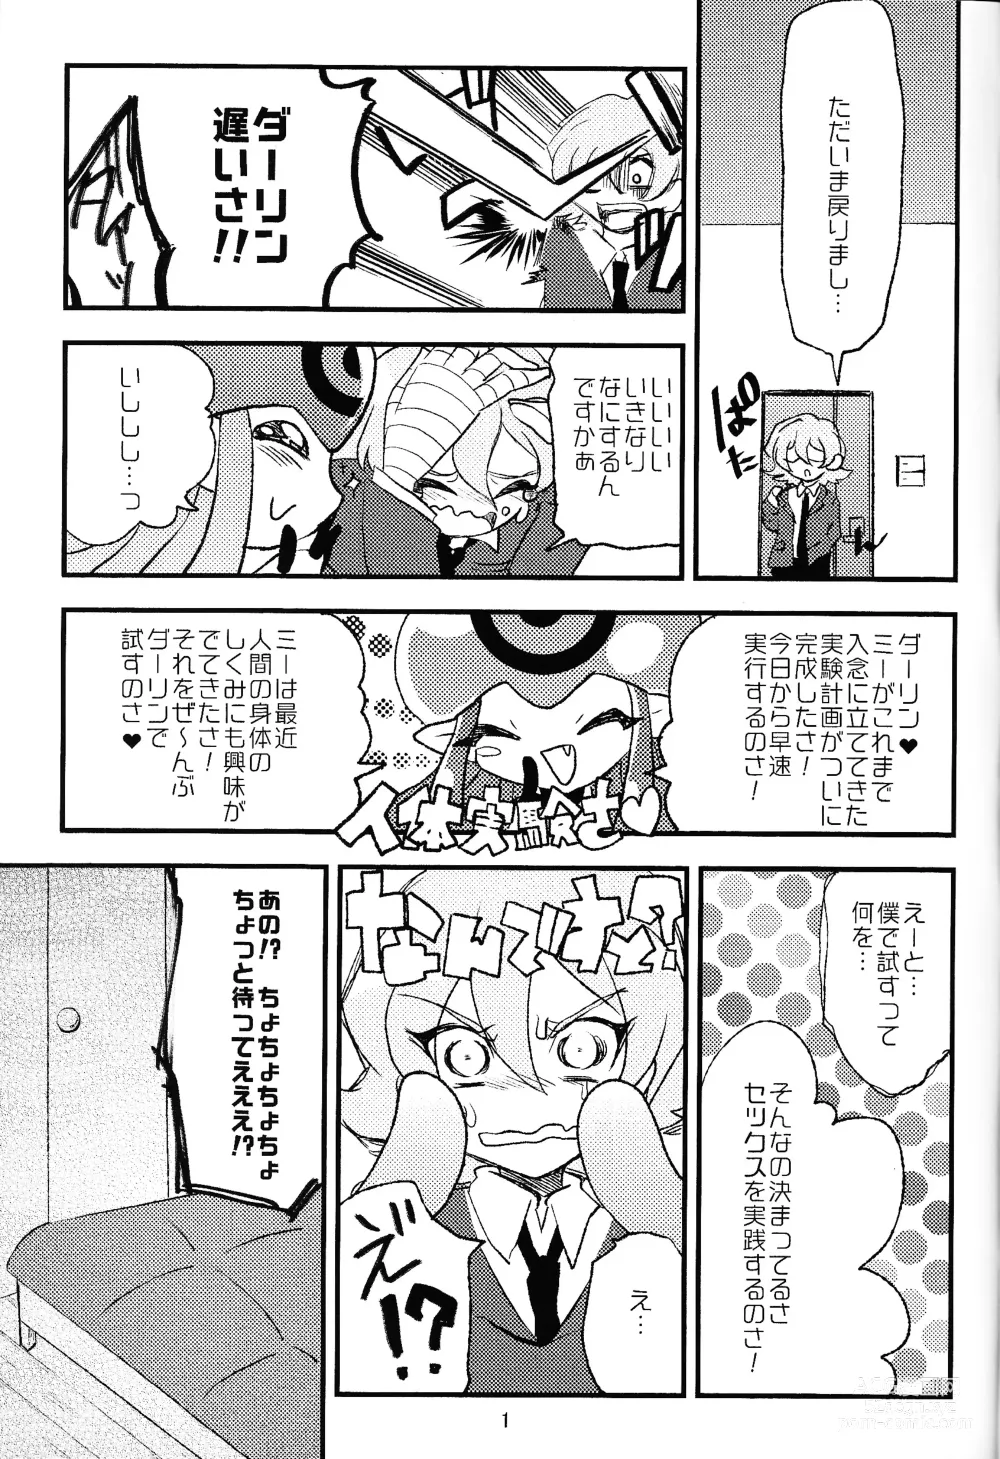 Page 2 of doujinshi Chusei kokoro ikusei gairon 1